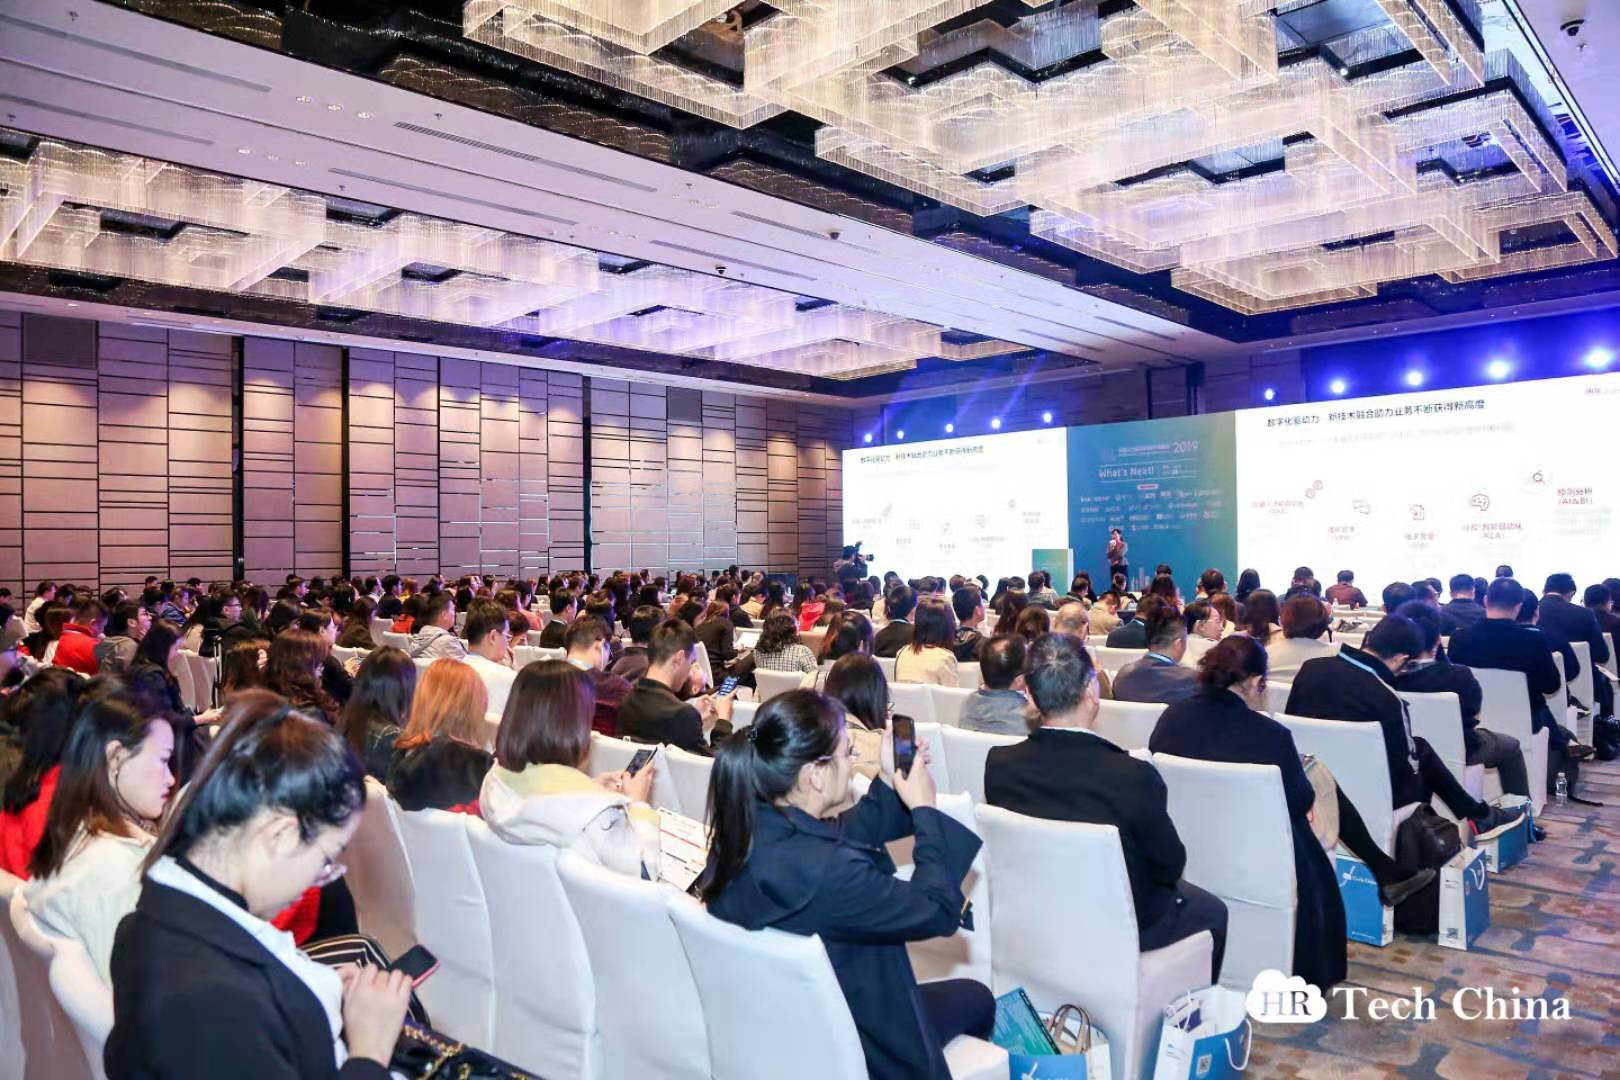 官宣丨餐学网荣膺HR Tech China“2019数字人力资源科技奖”